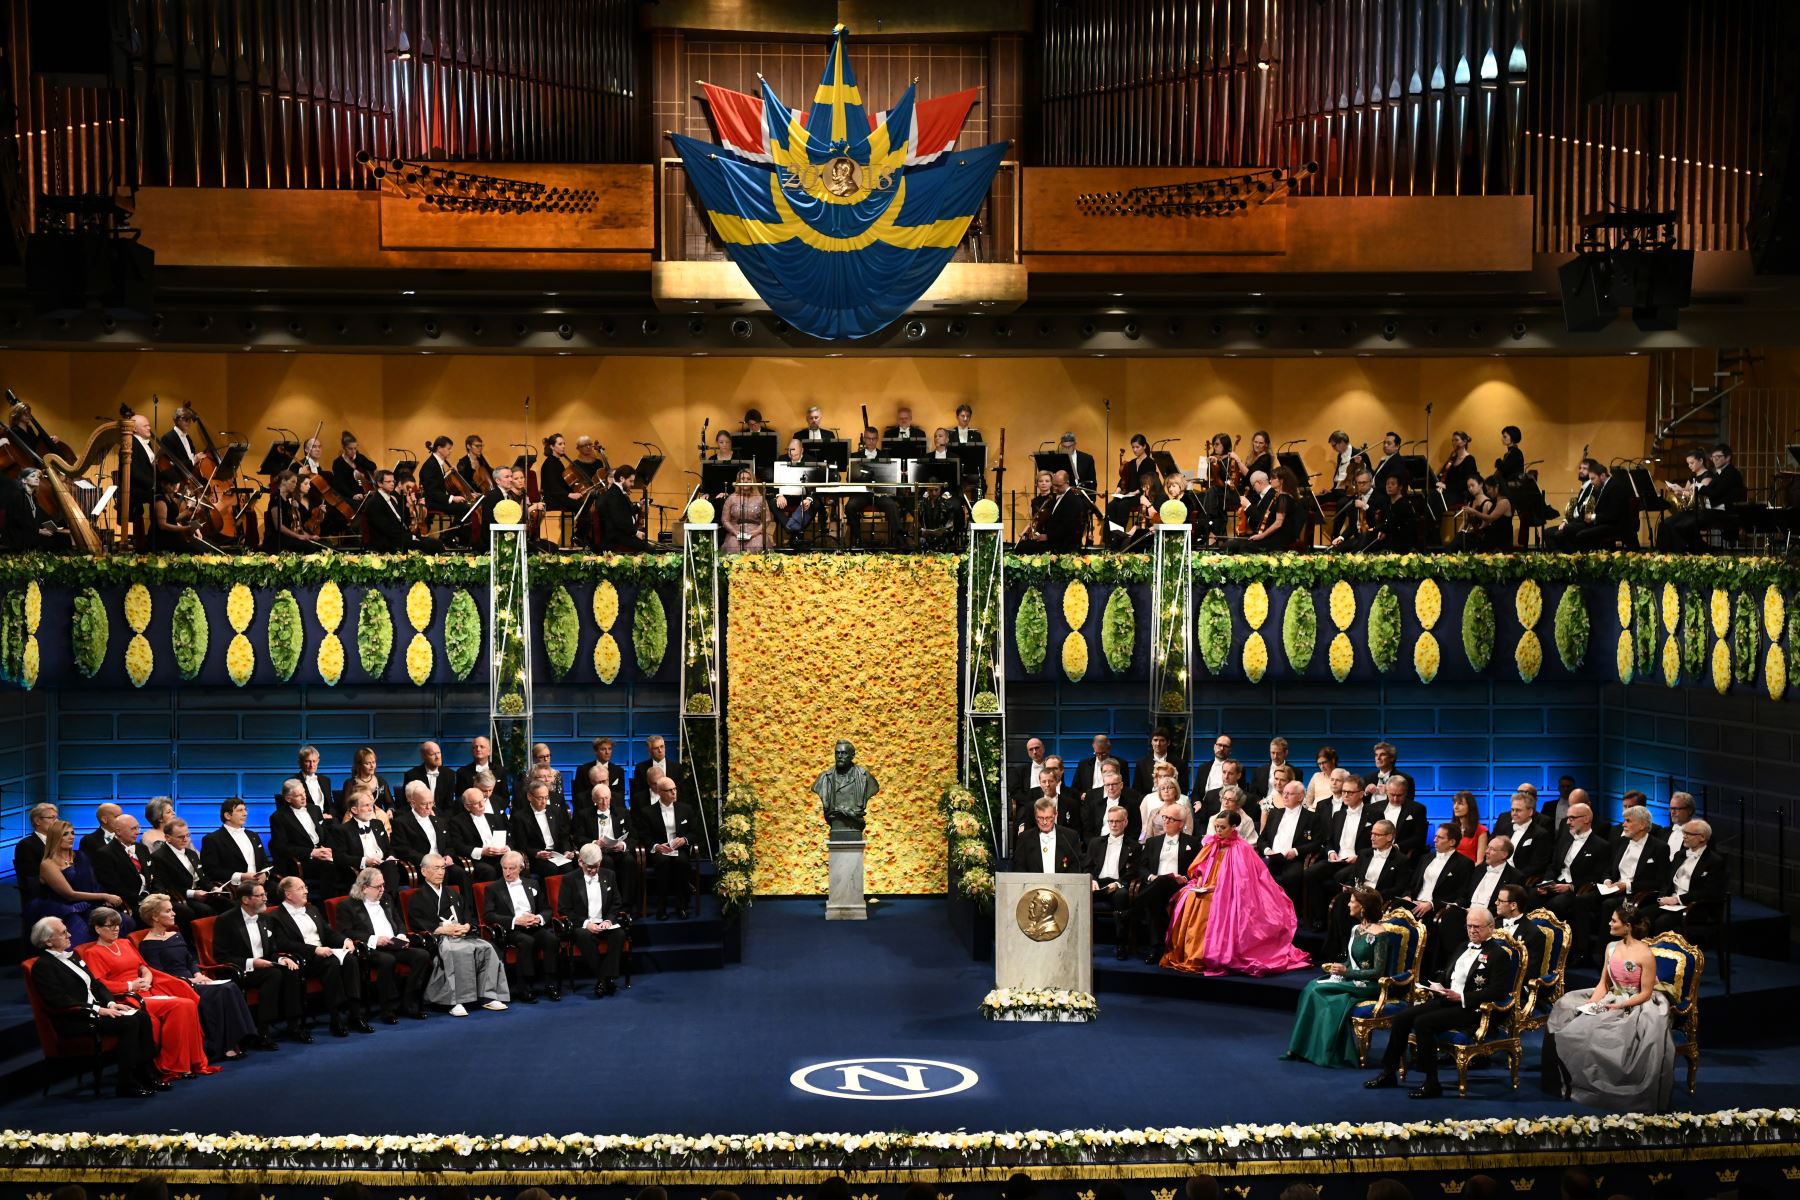 Los laureados (L) del Premio Nobel 2018 en todas las categorías, la familia real de Suecia (R-bottom) y los miembros del Comité Nobel (R-top) participan en la ceremonia de entrega del Premio Nobel 2018 el 10 de diciembre de 2018 en el concierto. Hall en Estocolmo, Suecia. AFP